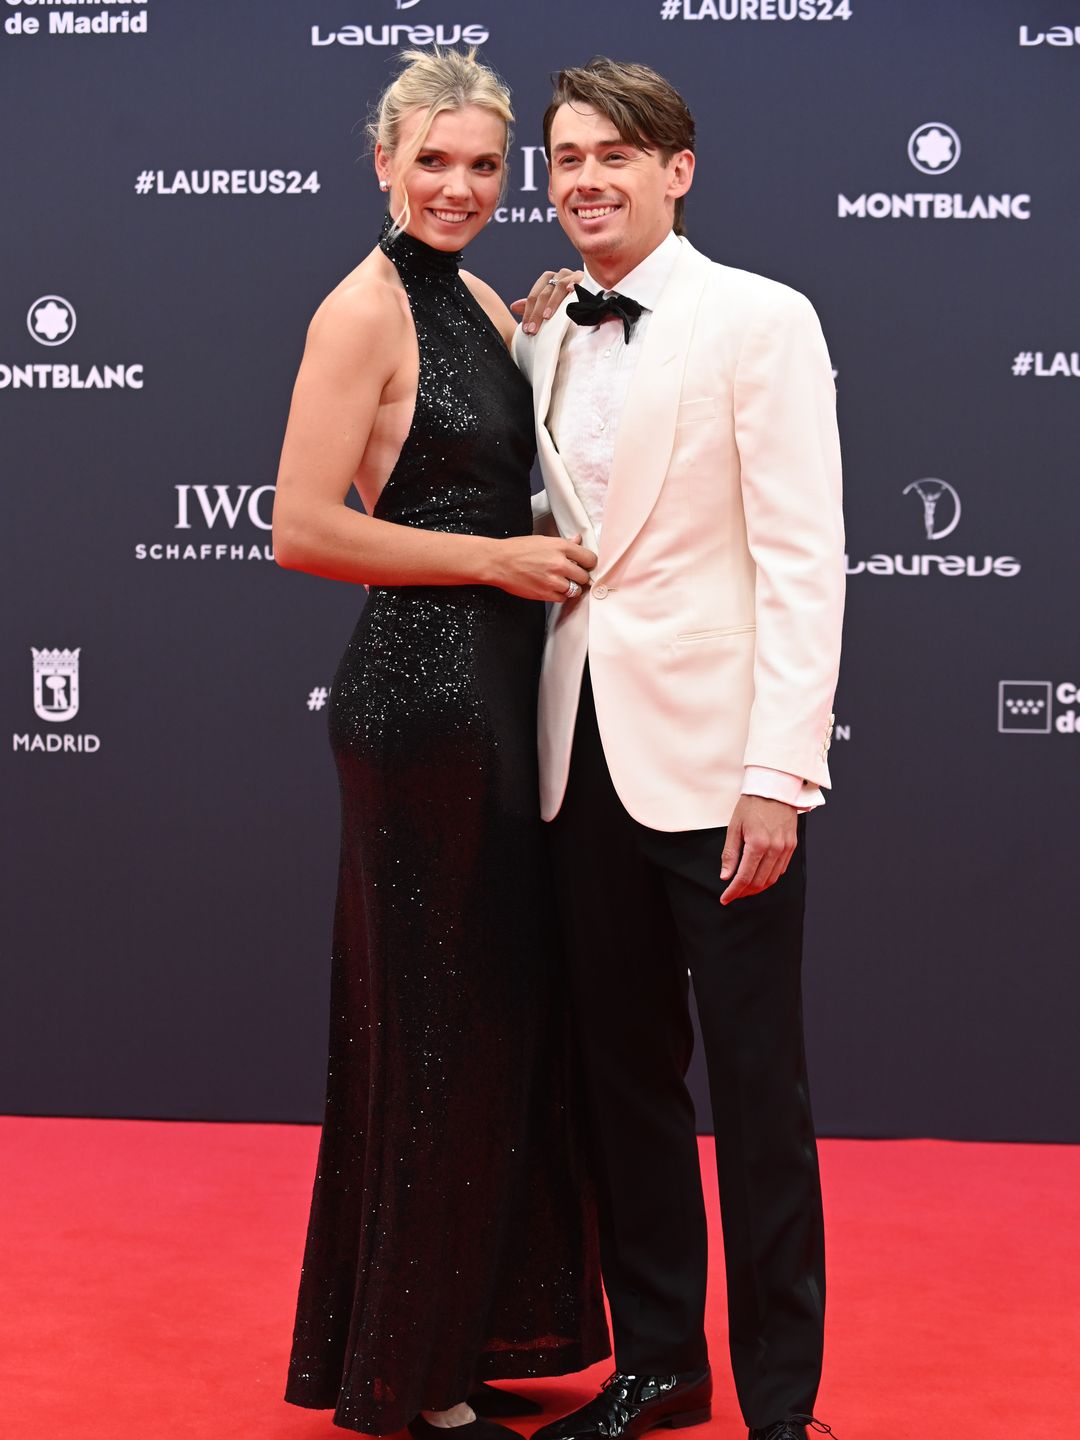 Katie Boulter and Alex de Minaur pose on red carpet